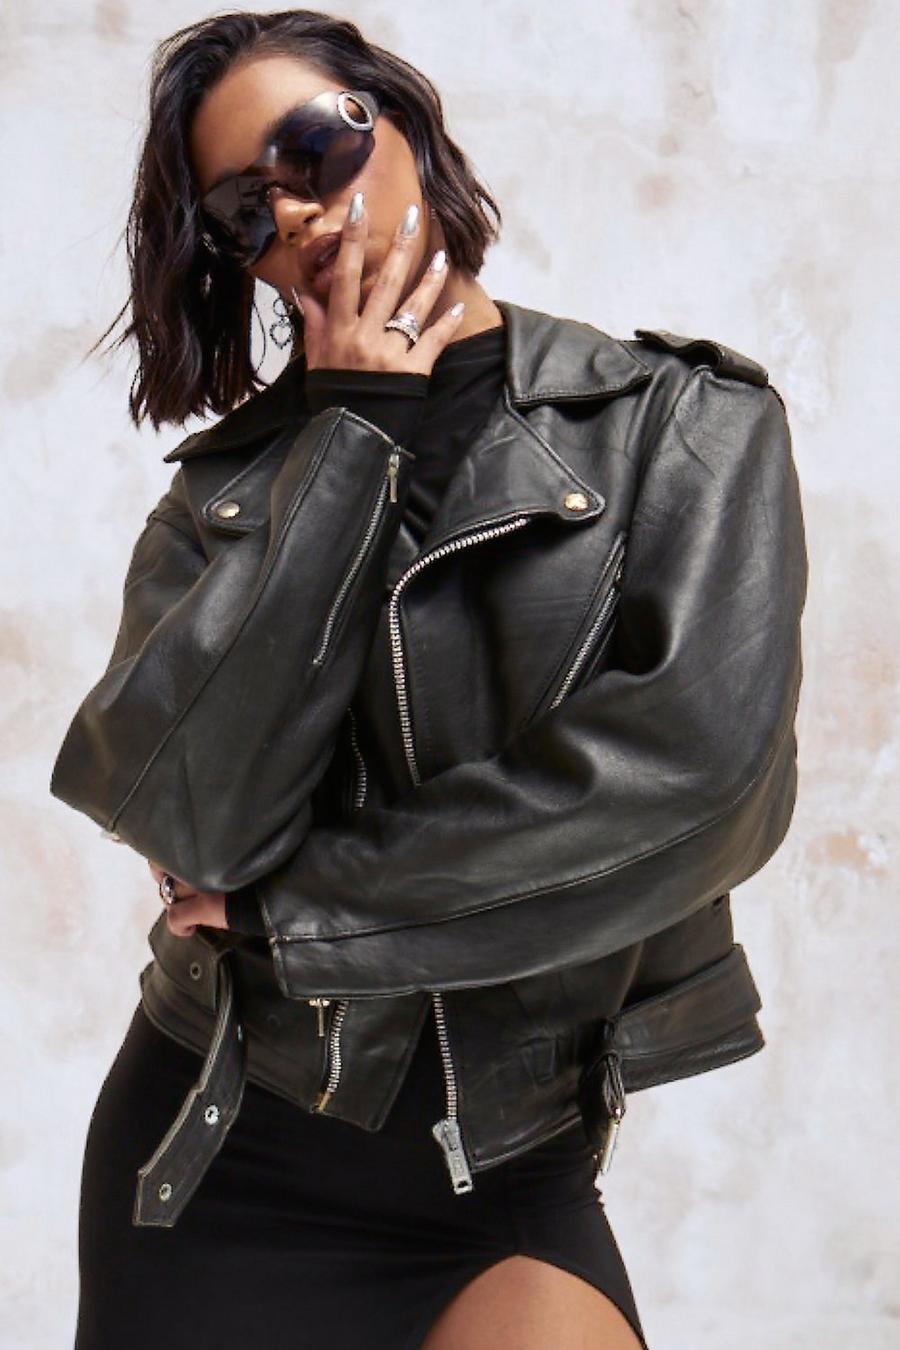 Black Kourtney Kardashian Barker Vintage Leather Biker Jacket image number 1